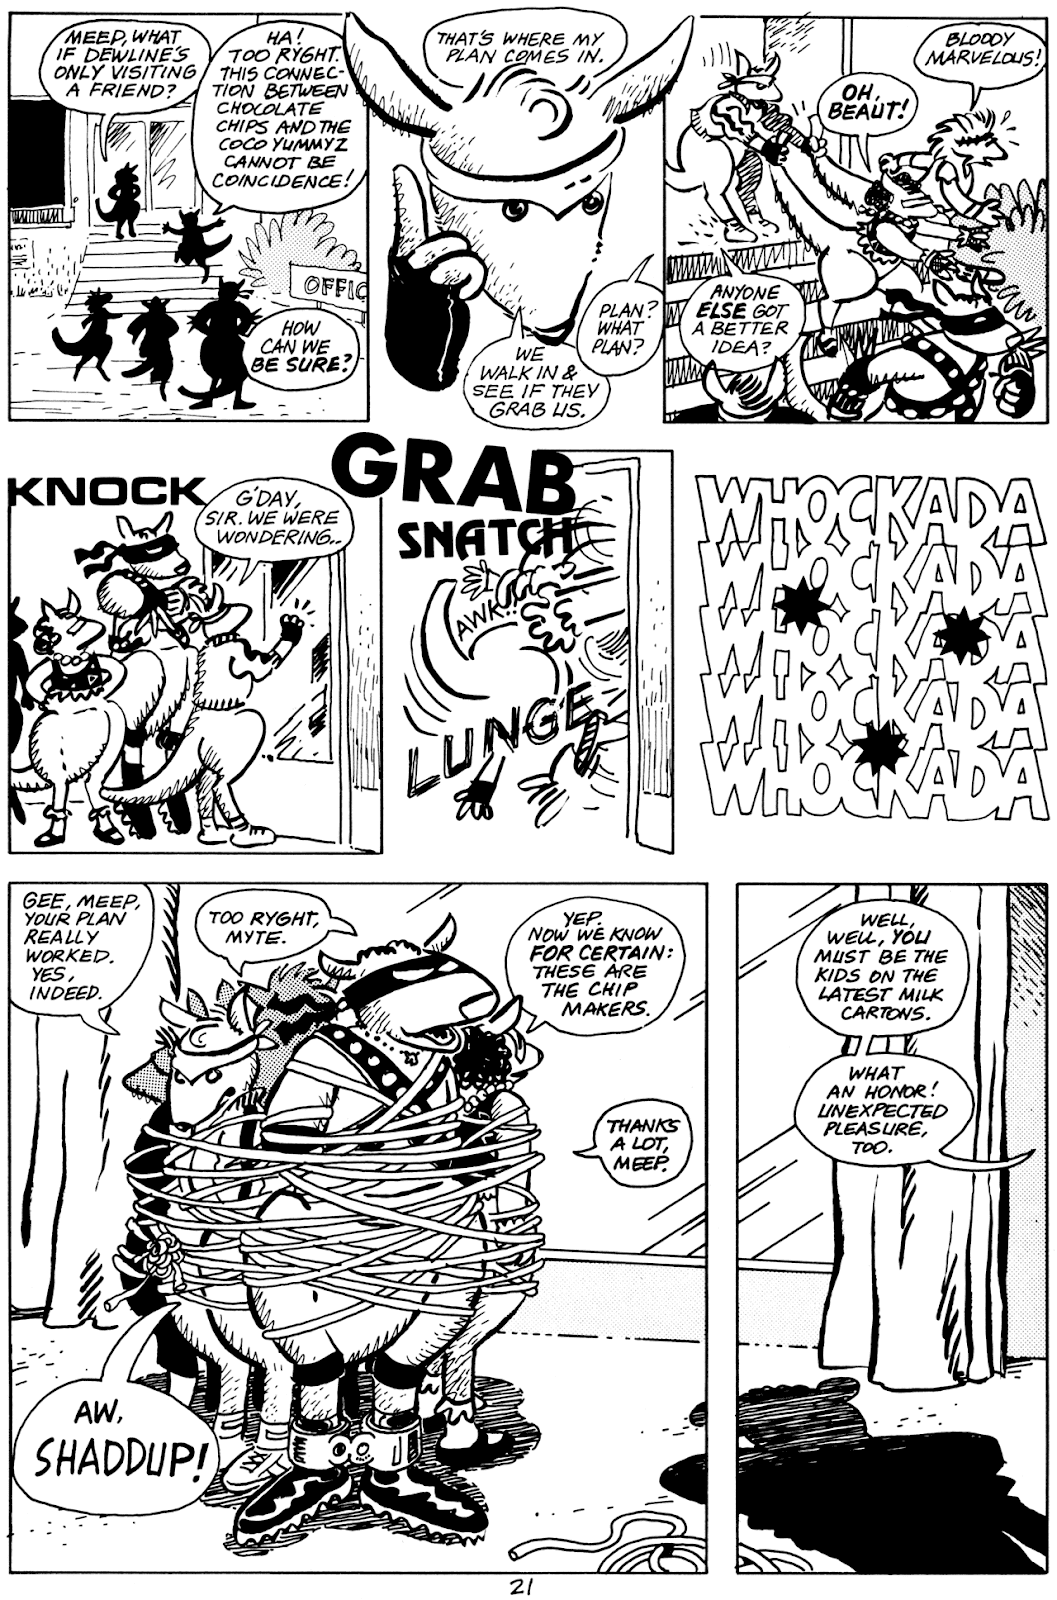 Pre-Teen Dirty-Gene Kung-Fu Kangaroos issue 1 - Page 23